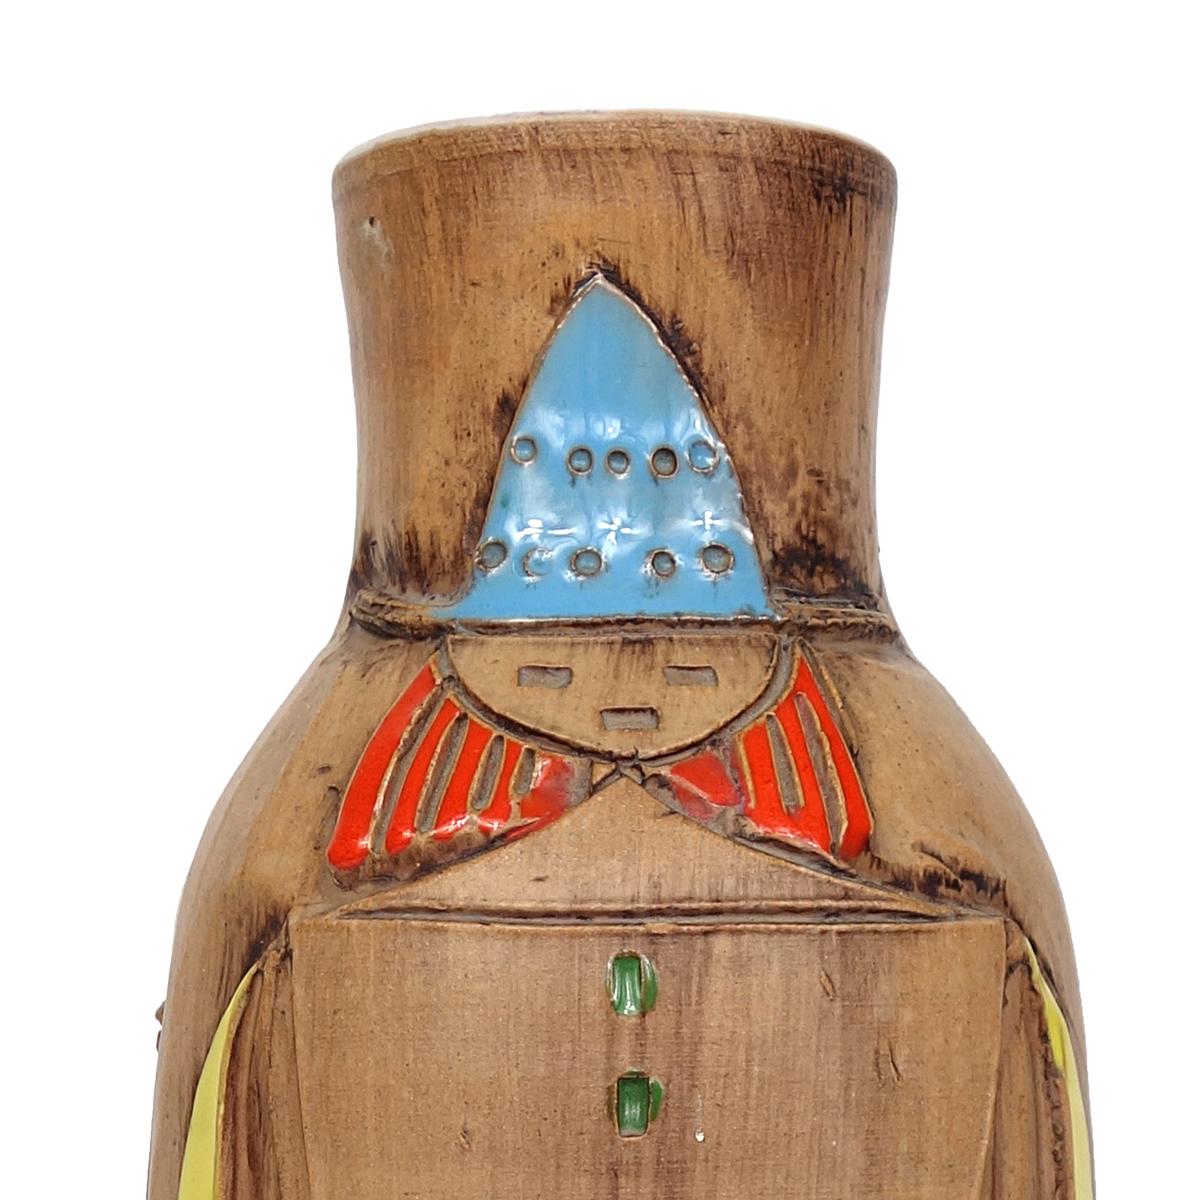 Grand vase en céramique très gai, créé par les designers italiens Fratelli Fancuillacci.

Les couleurs primaires sur le fond couleur terre forment deux adultes et un enfant marchant sous un parapluie. 

Même sans fleurs, c'est un objet